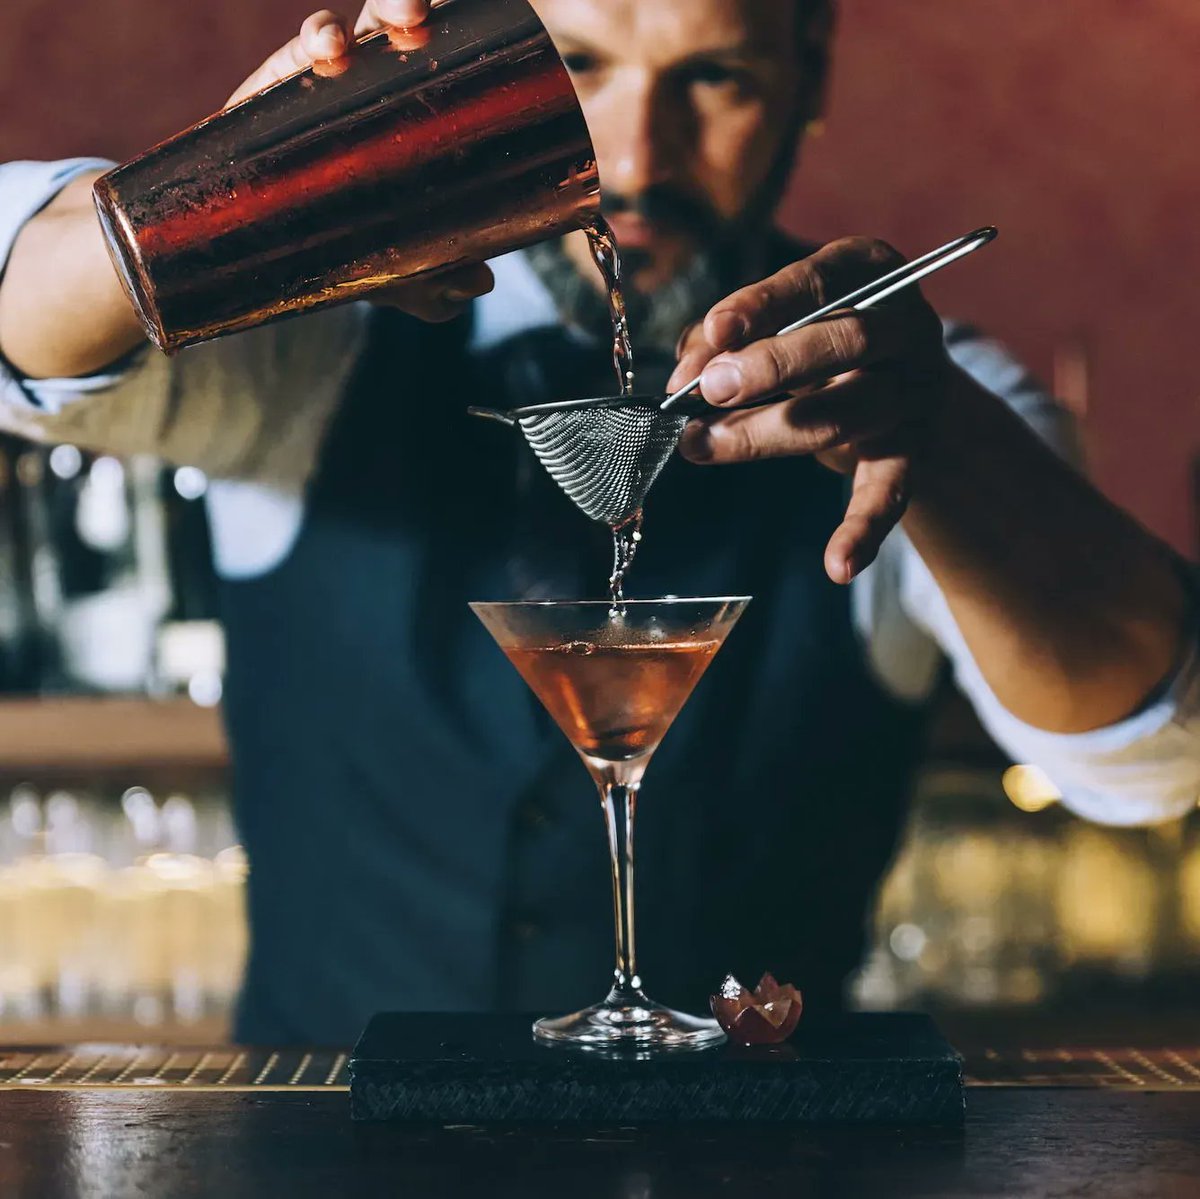 Combina el sabor de @roncontrabando en tu cocktail favorito y... ¡Disfruta! 🤭 😋 #cocktail #contrabando 👉 buff.ly/2IA0oiS